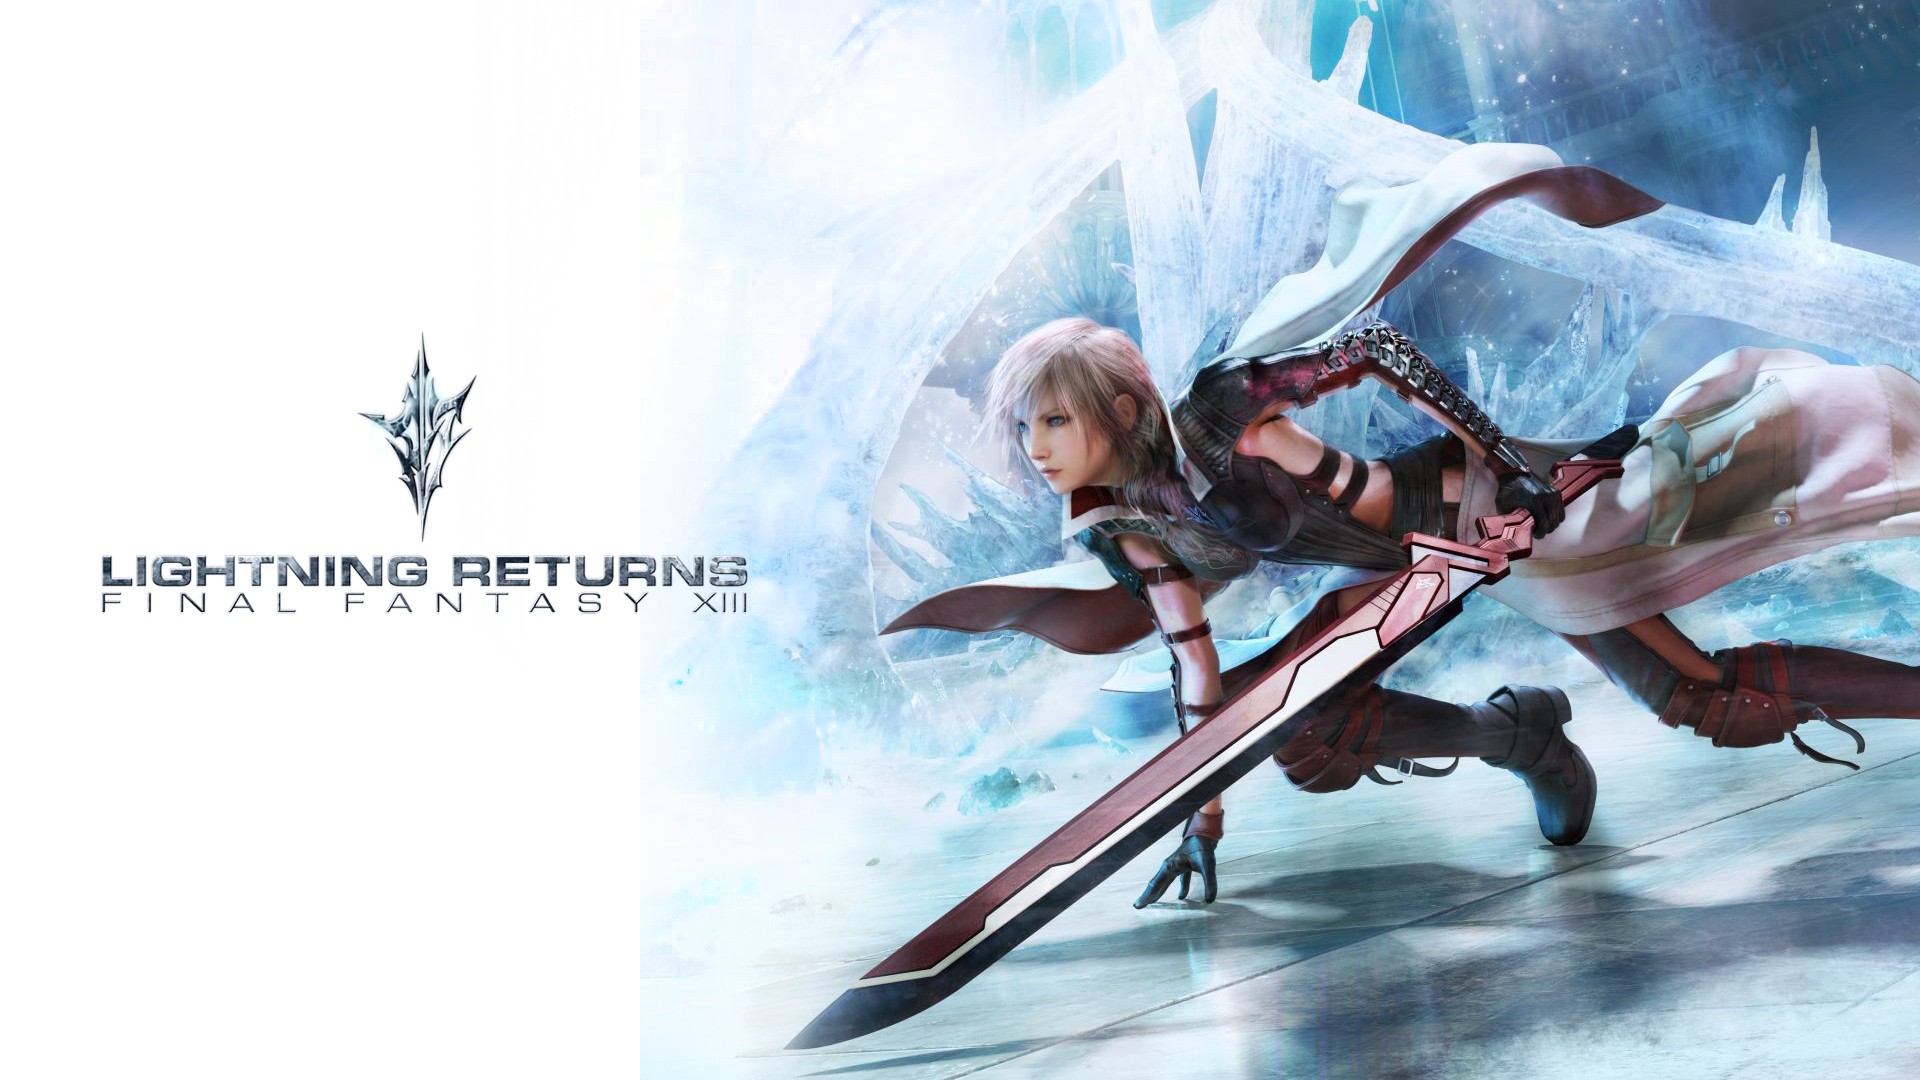 Скачать обои бесплатно Видеоигры, Последняя Фантазия, Молния Возвращается: Final Fantasy Xiii картинка на рабочий стол ПК